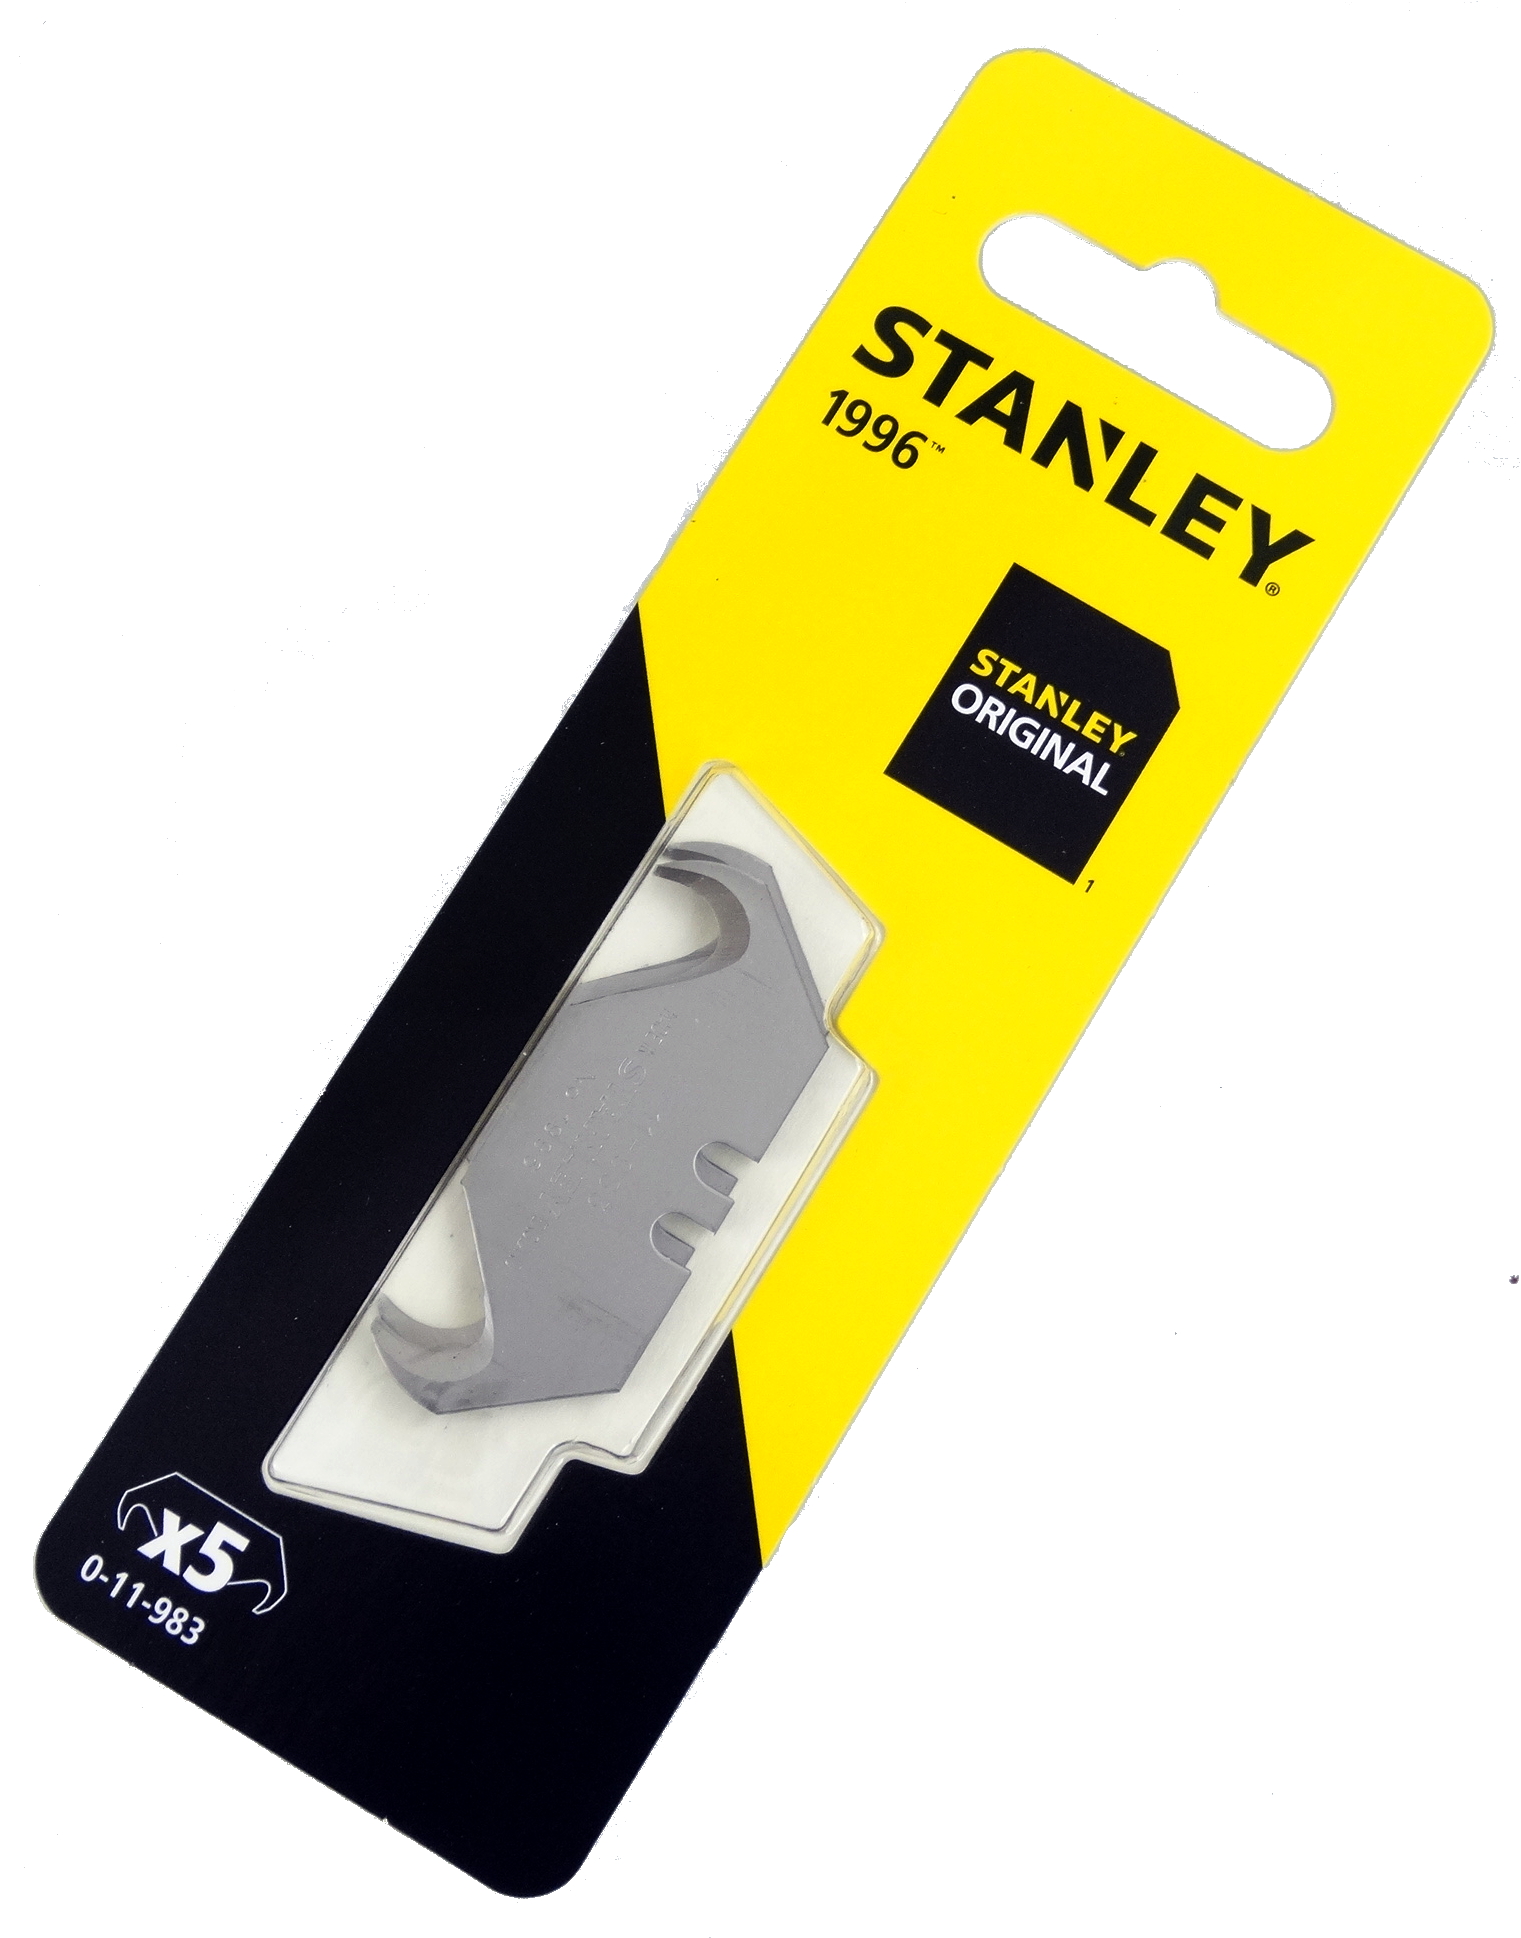 Stanley - 1998 Linoleum Hook Knife Blade 0-11-980